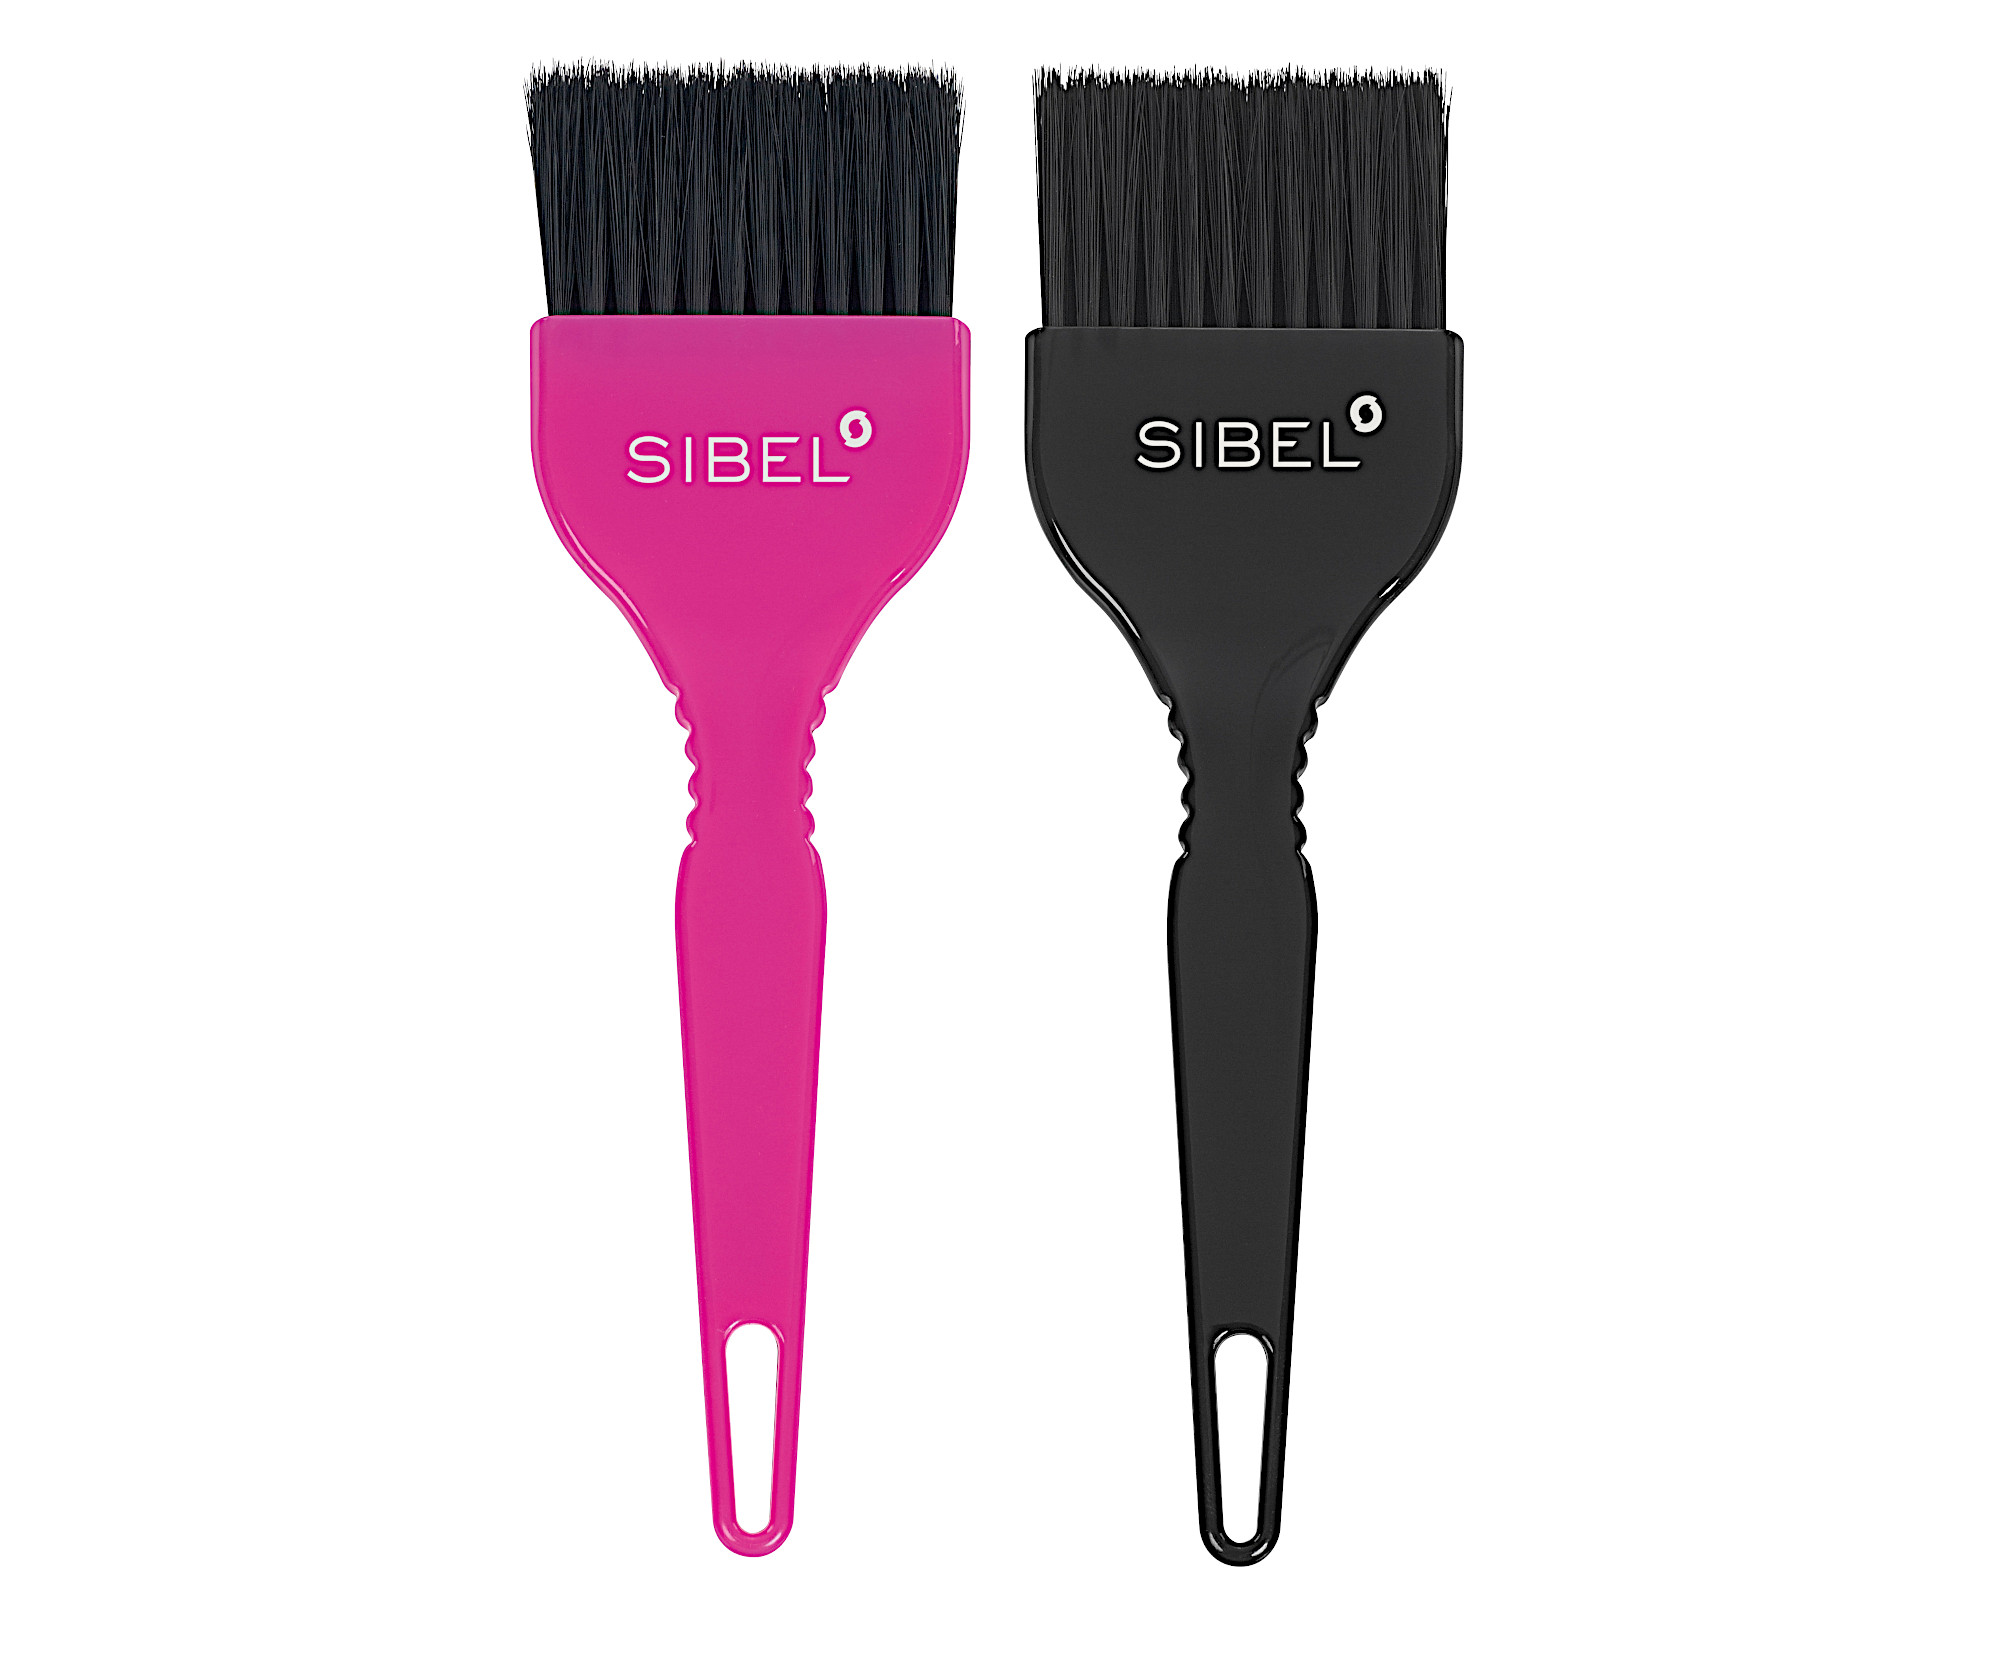 Sada štětců na barvení vlasů Sibel - 5,5 cm, 2 ks (8450291) + dárek zdarma